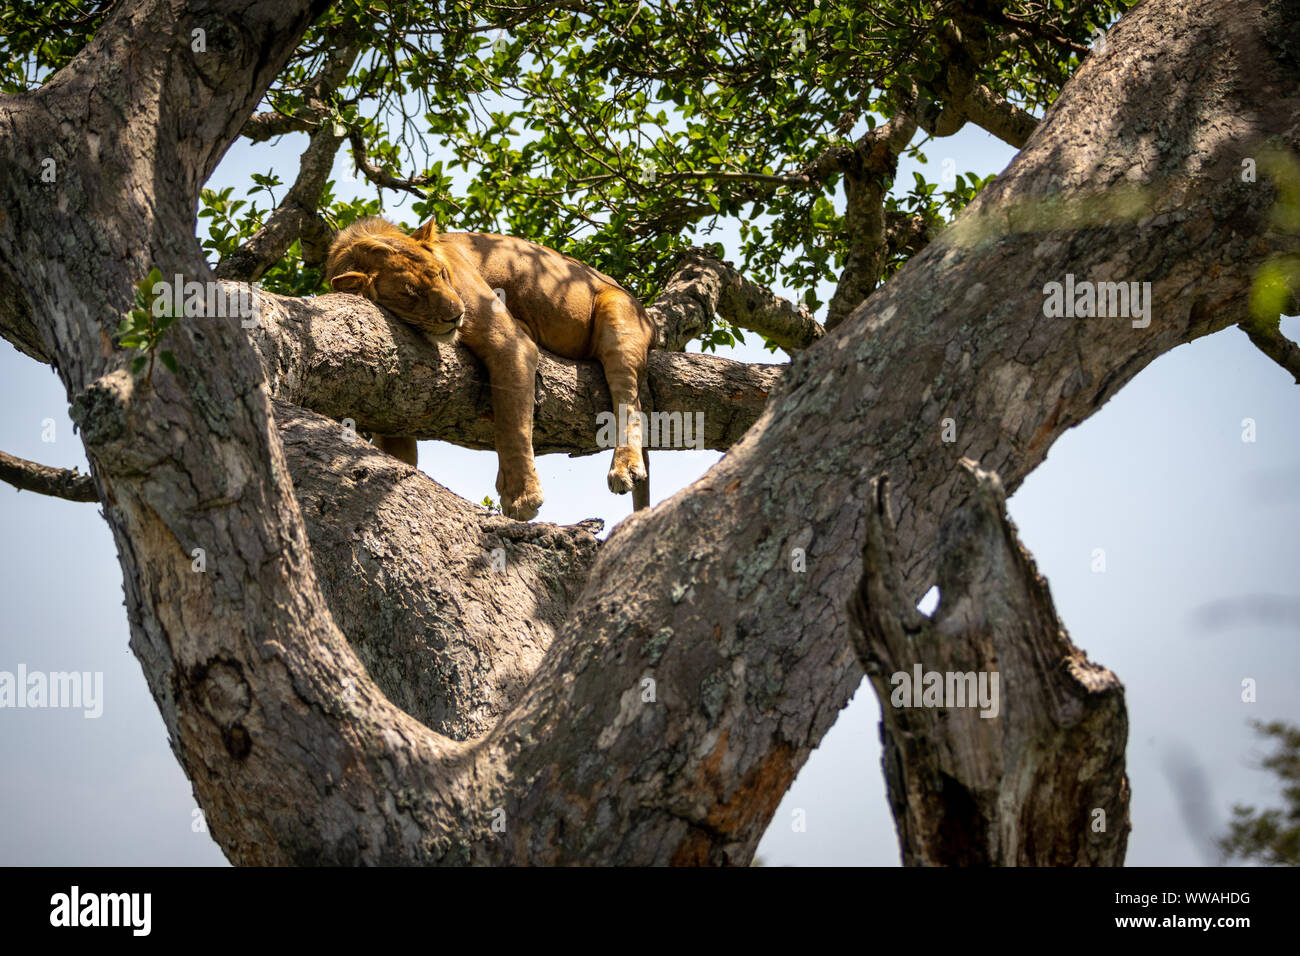 Portrait de lion (Panthera leo) reposant sur branche d'arbre, Parc national Queen Elizabeth, en Ouganda Banque D'Images